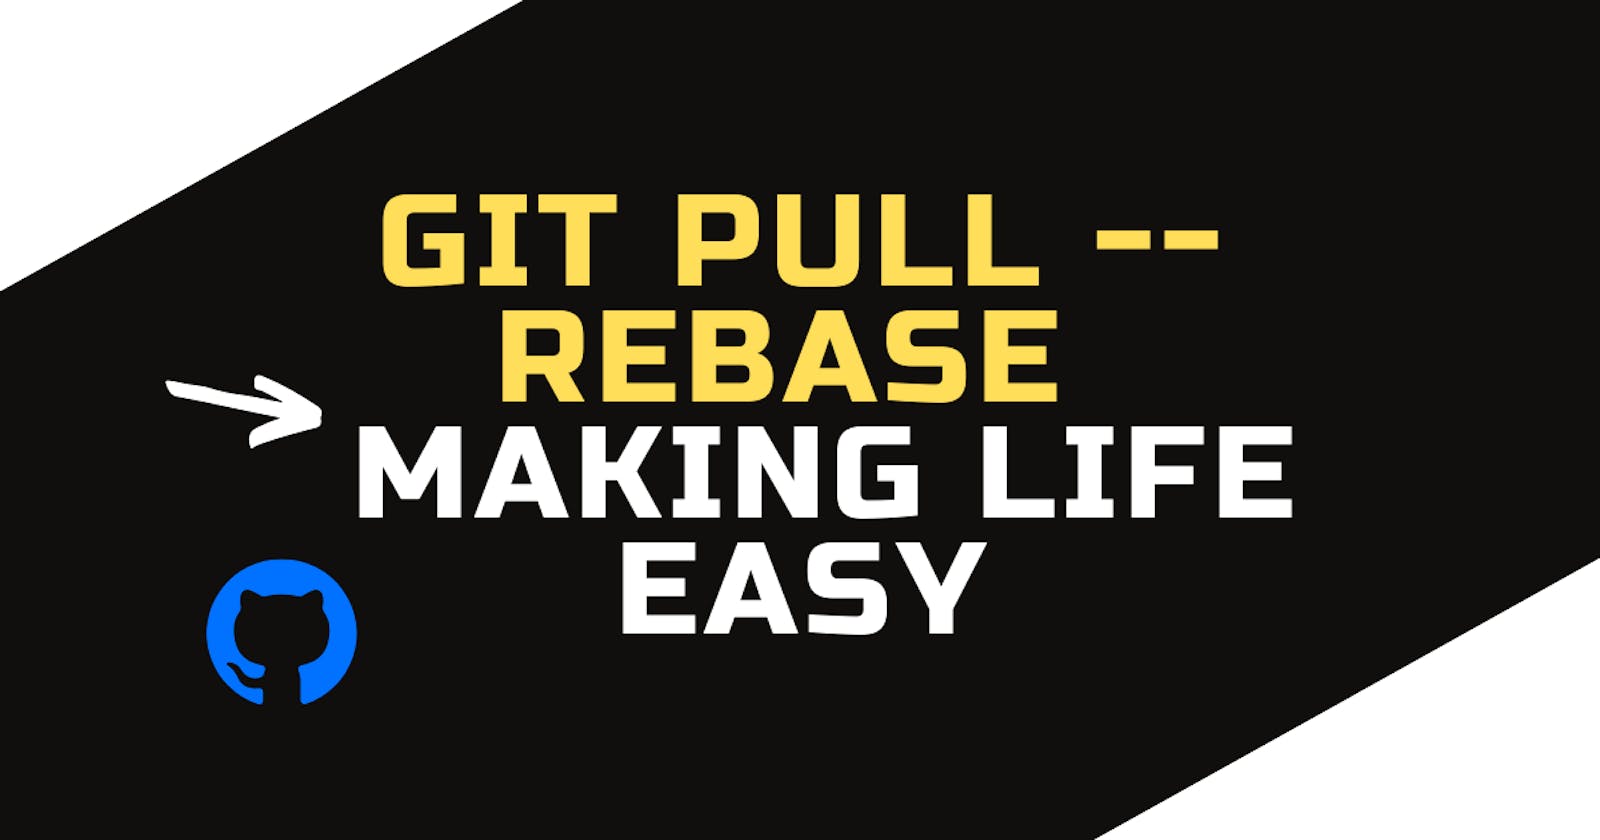 git pull --rebase: Making life easy